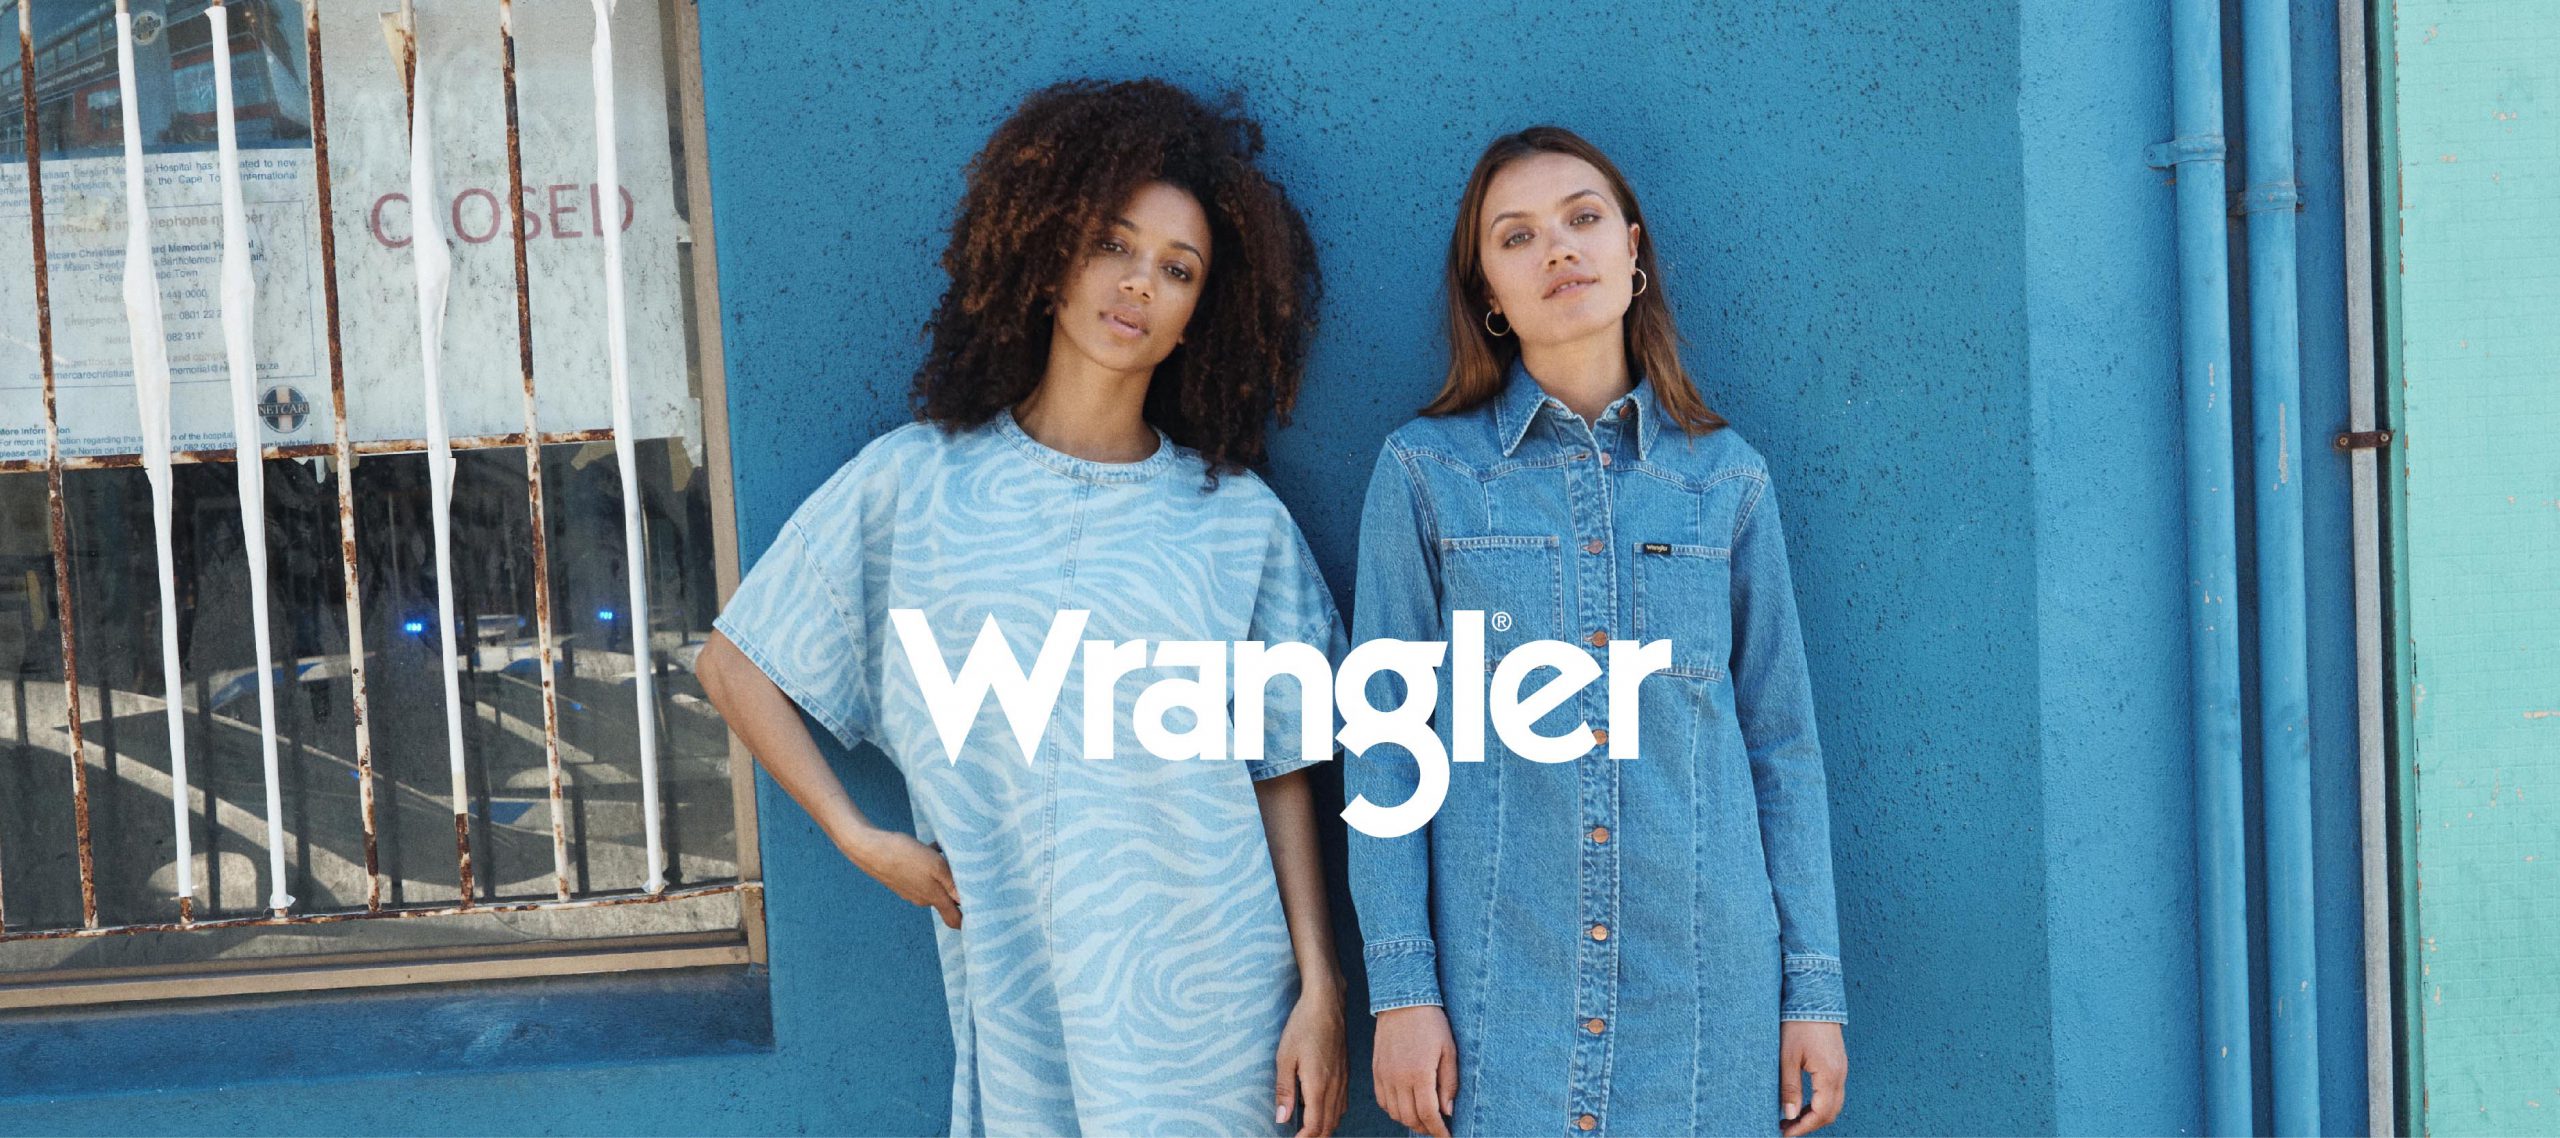 ใกล้คุณมากขึ้นแค่ปลายนิ้ว Wrangler ชวนค้นหาเดนิมที่ใช่ในสไตล์ที่เป็นคุณได้แล้ววันนี้ที่ Wrangler.co.th